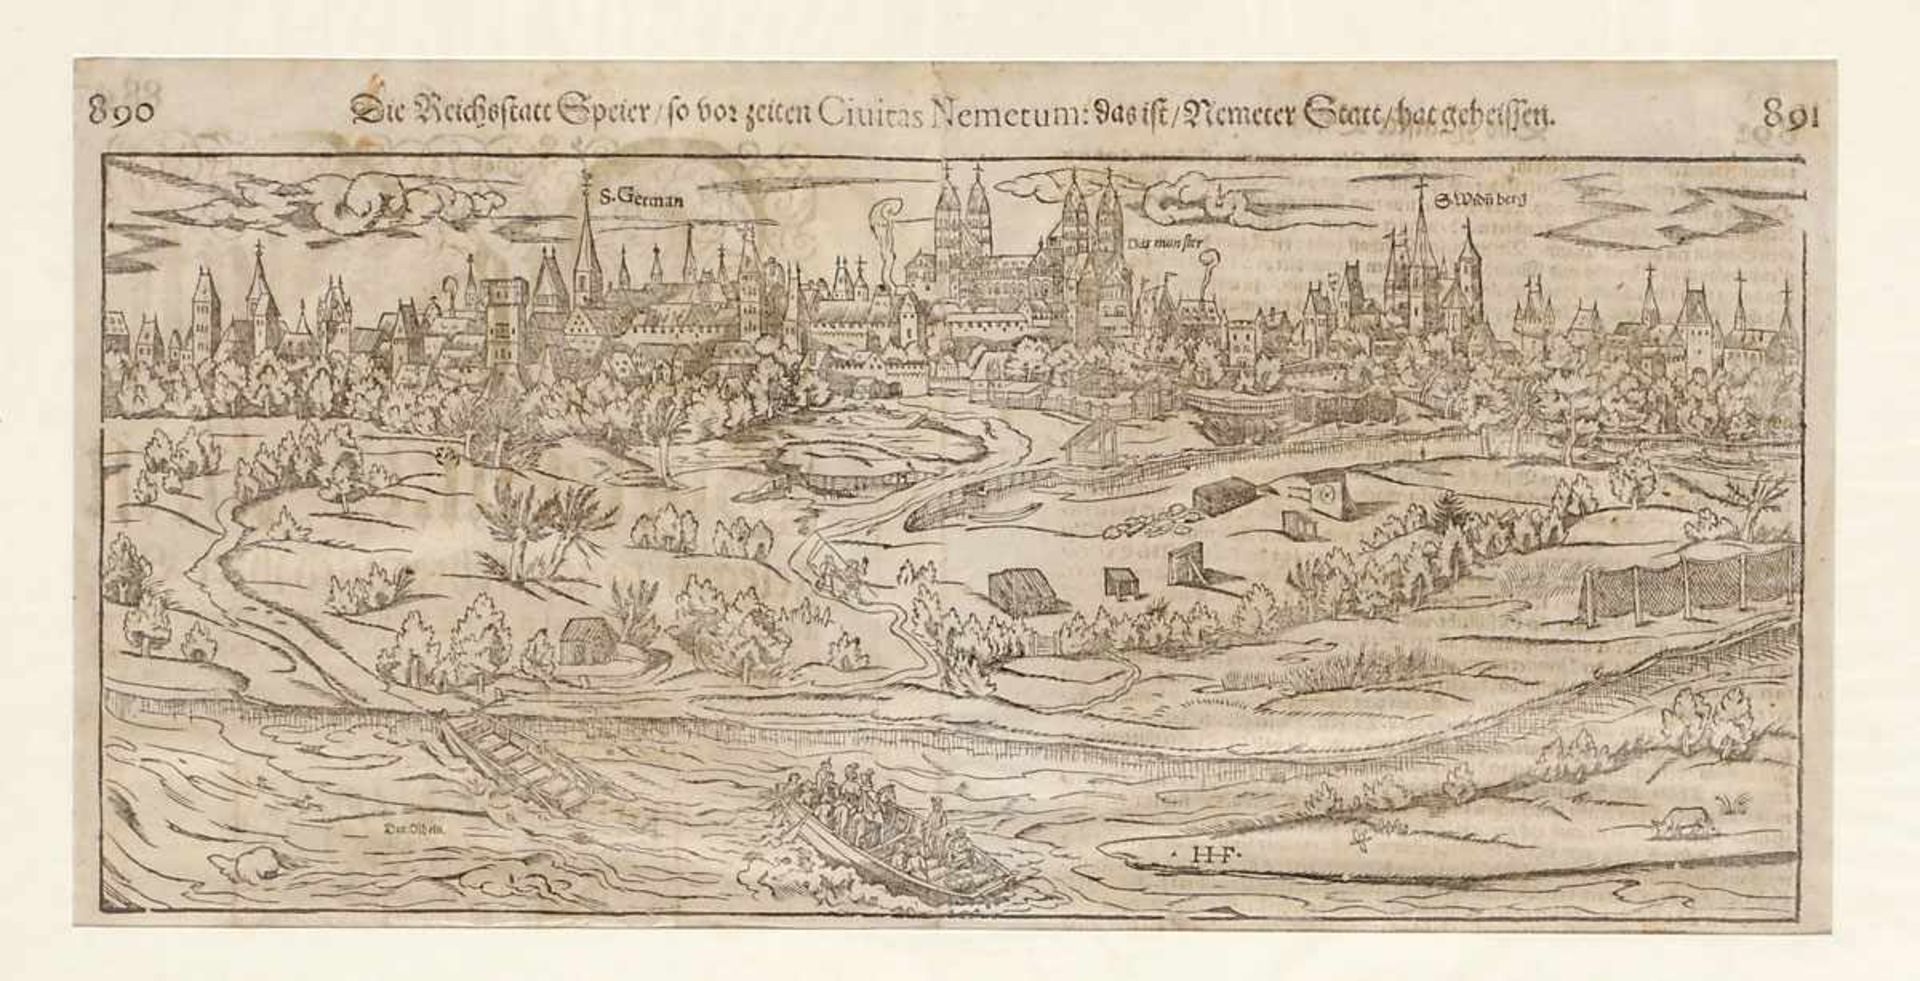 Sebastian Münster1488 Nieder-Ingelheim - 1552 Basel - "Die Reichstatt Speier..." - Holzschnitt.